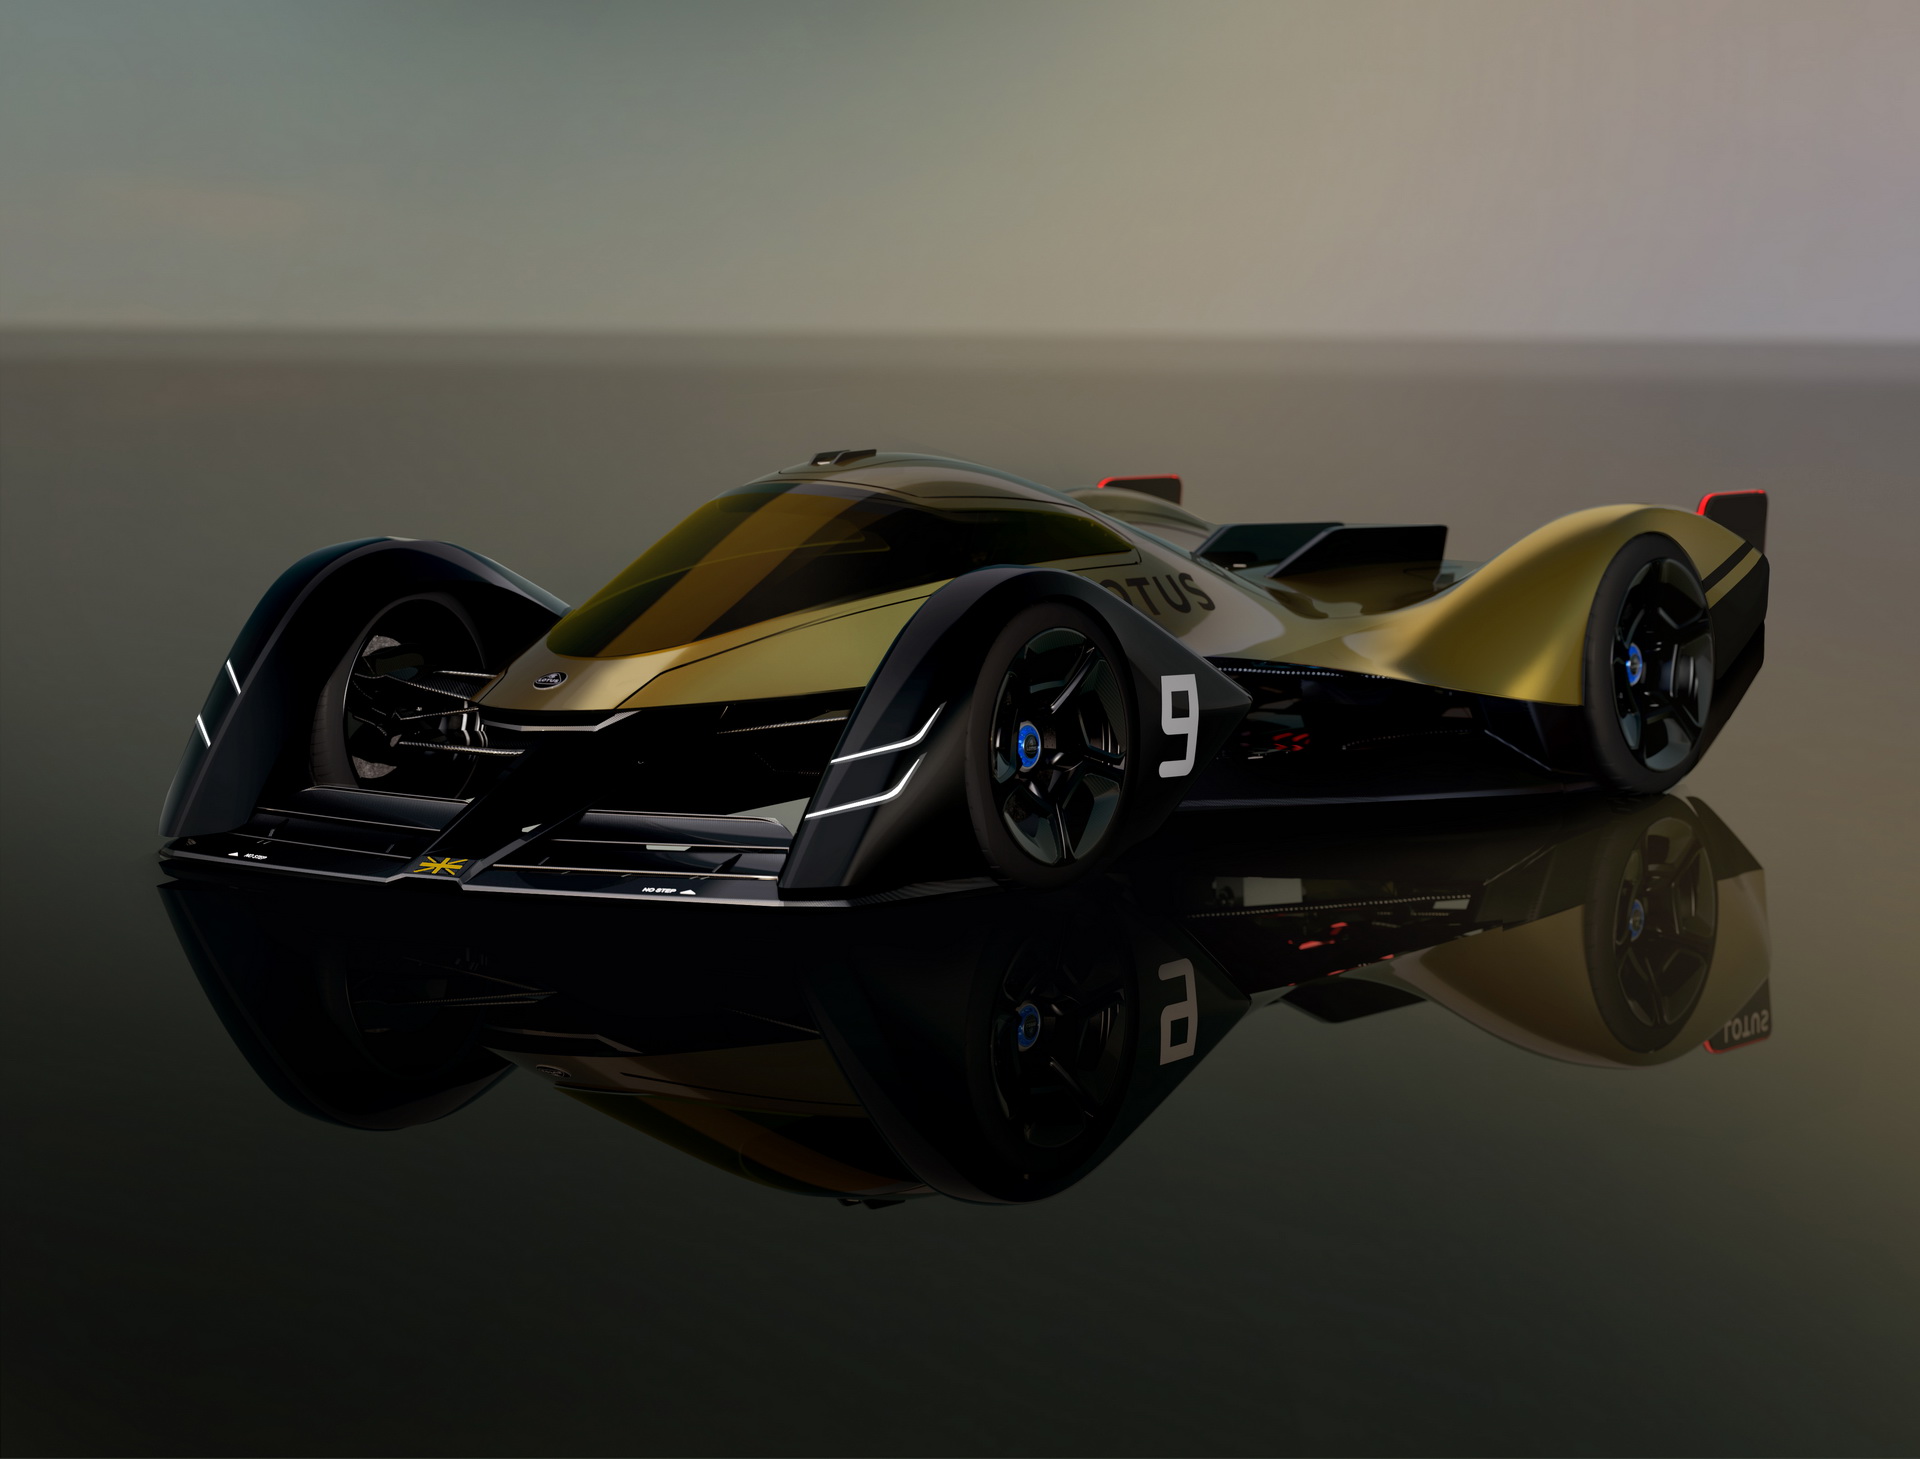 Lotus E-R9, 2021 – Design study for 2030